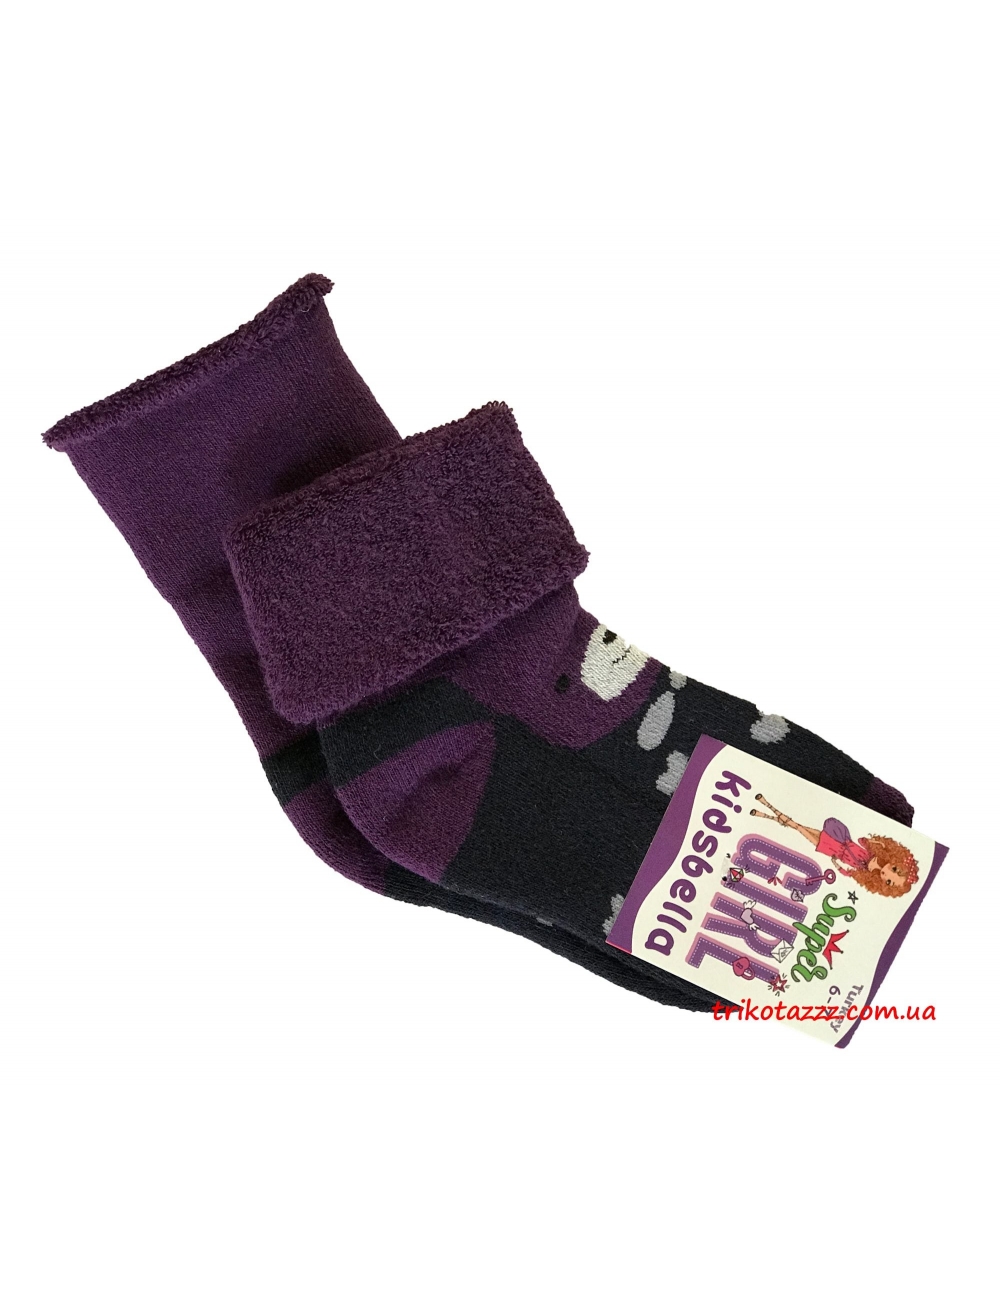 Теплые носки для девочек Мишка тм"Kidsbella" фиолетовые